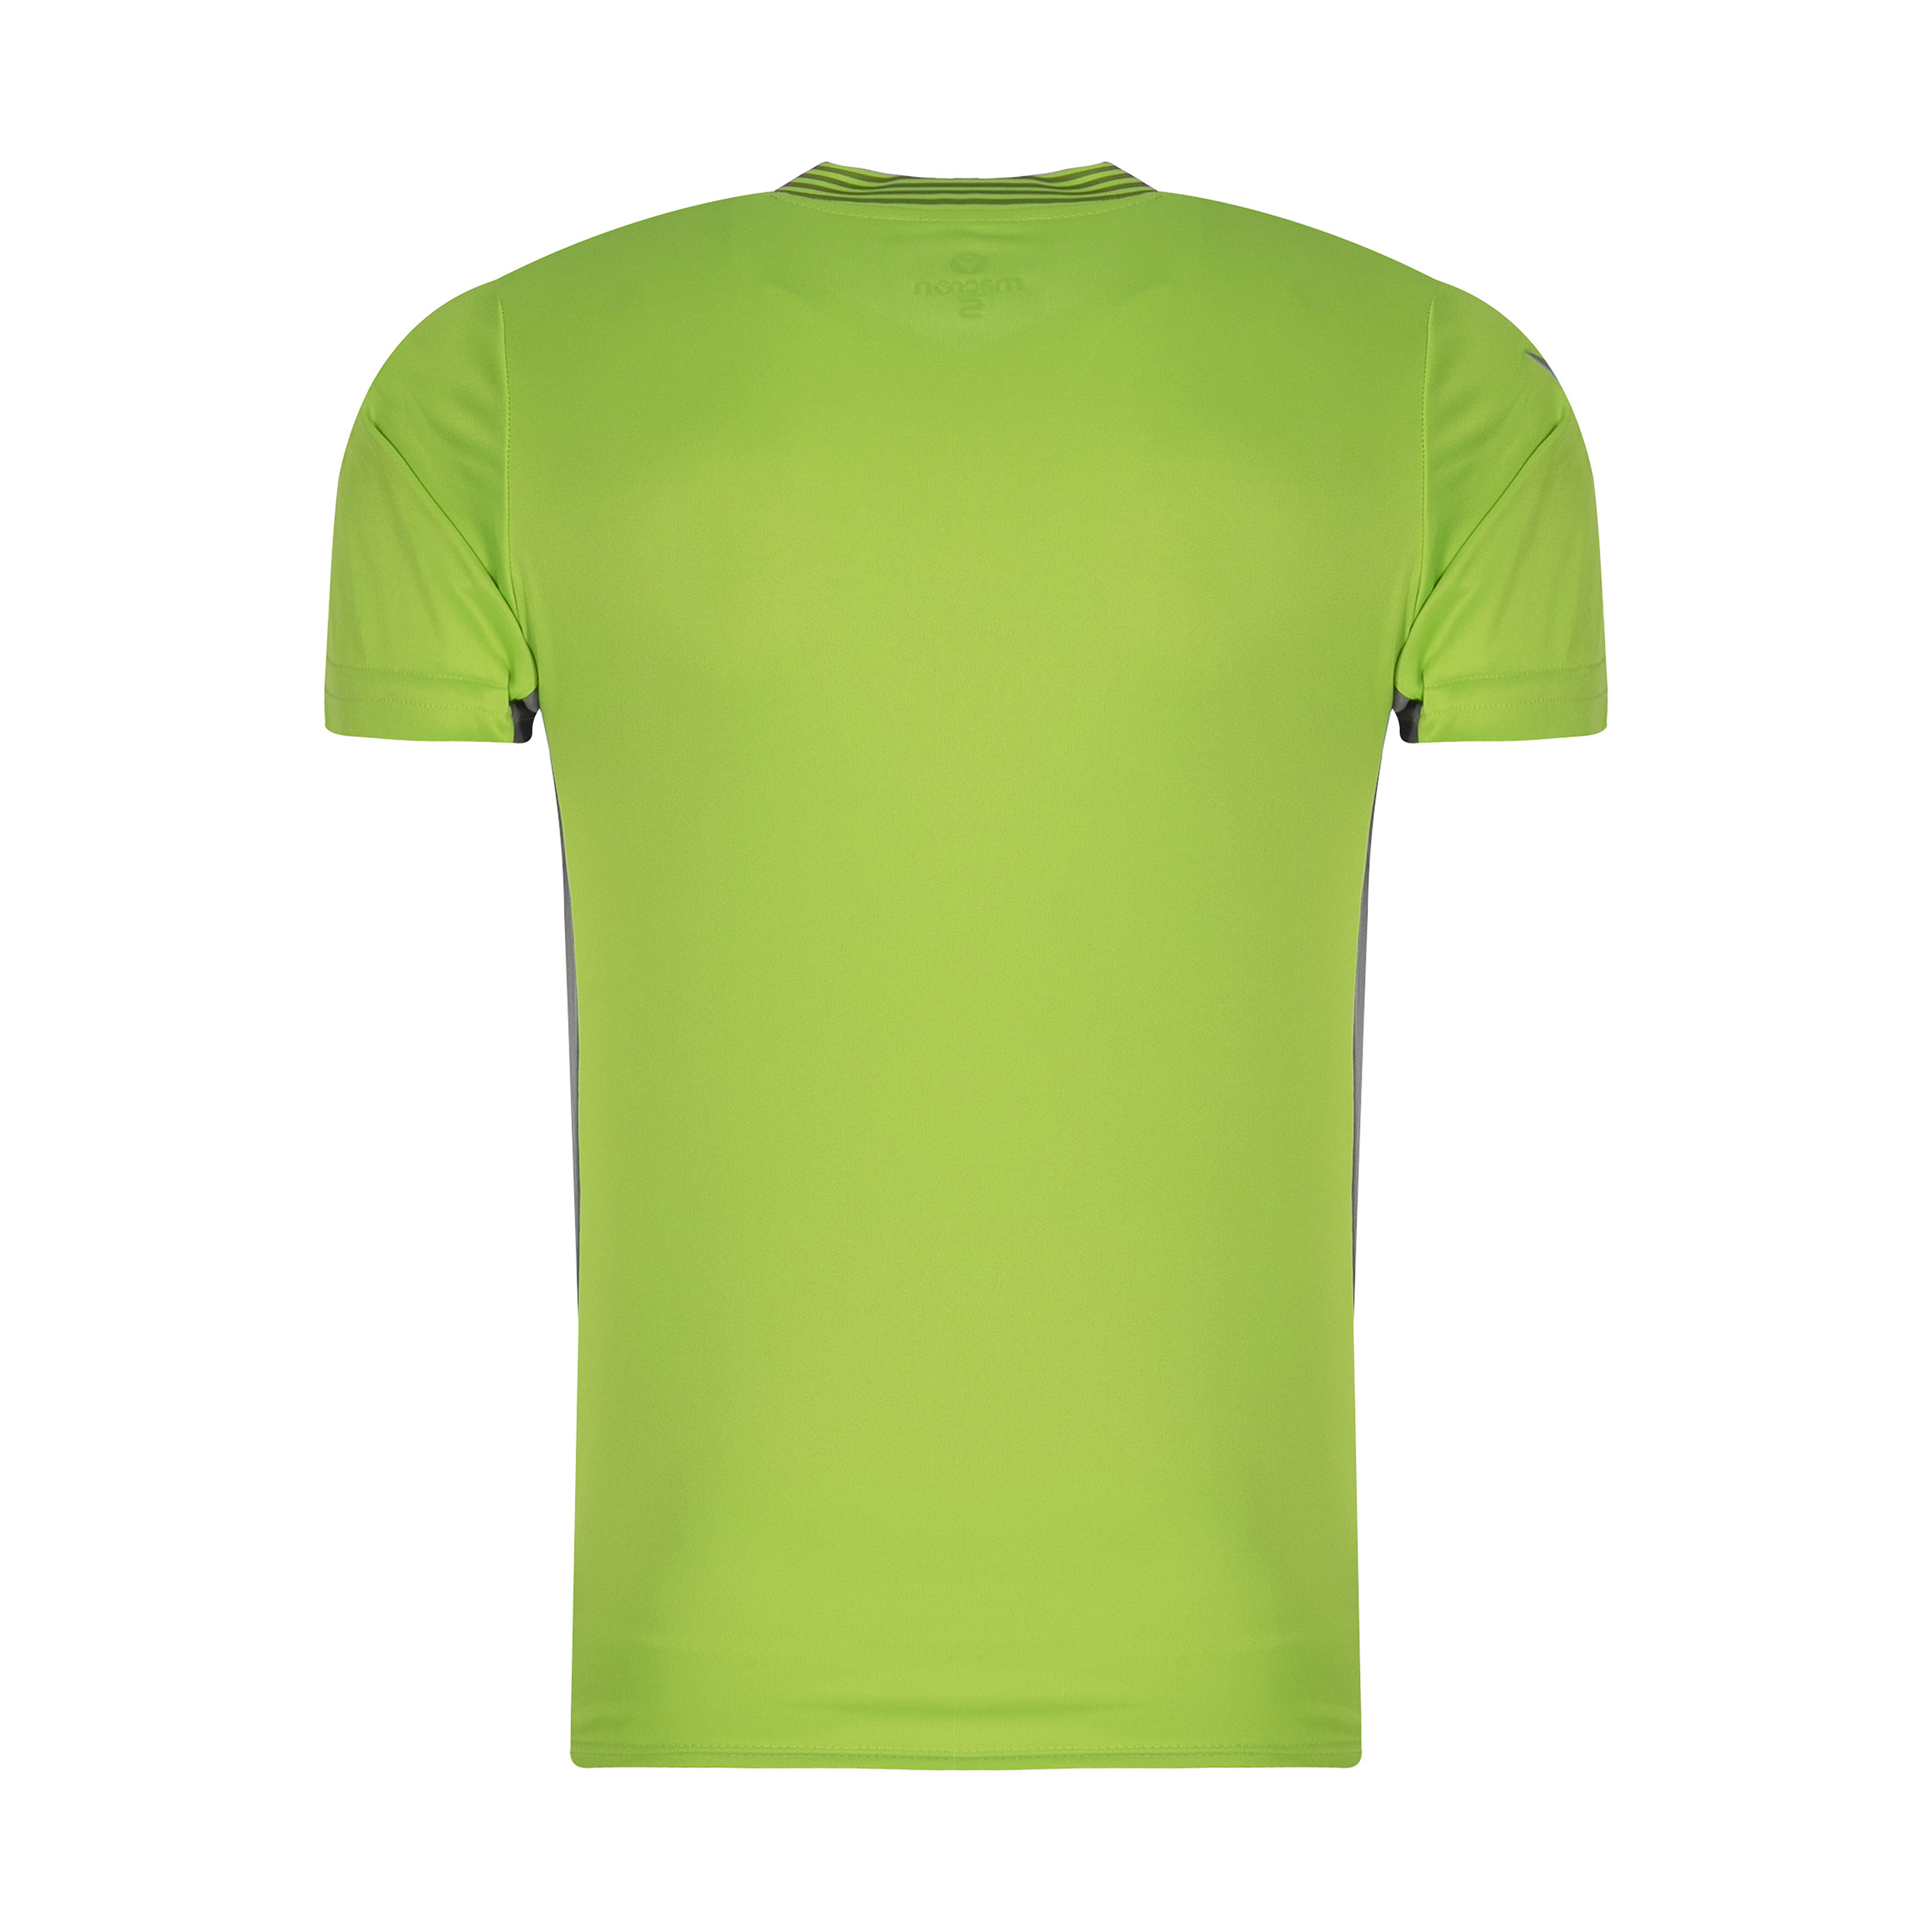 ست تی شرت و شلوارک ورزشی مردانه مکرون مدل کاناپوس رنگ فسفری -  - 3